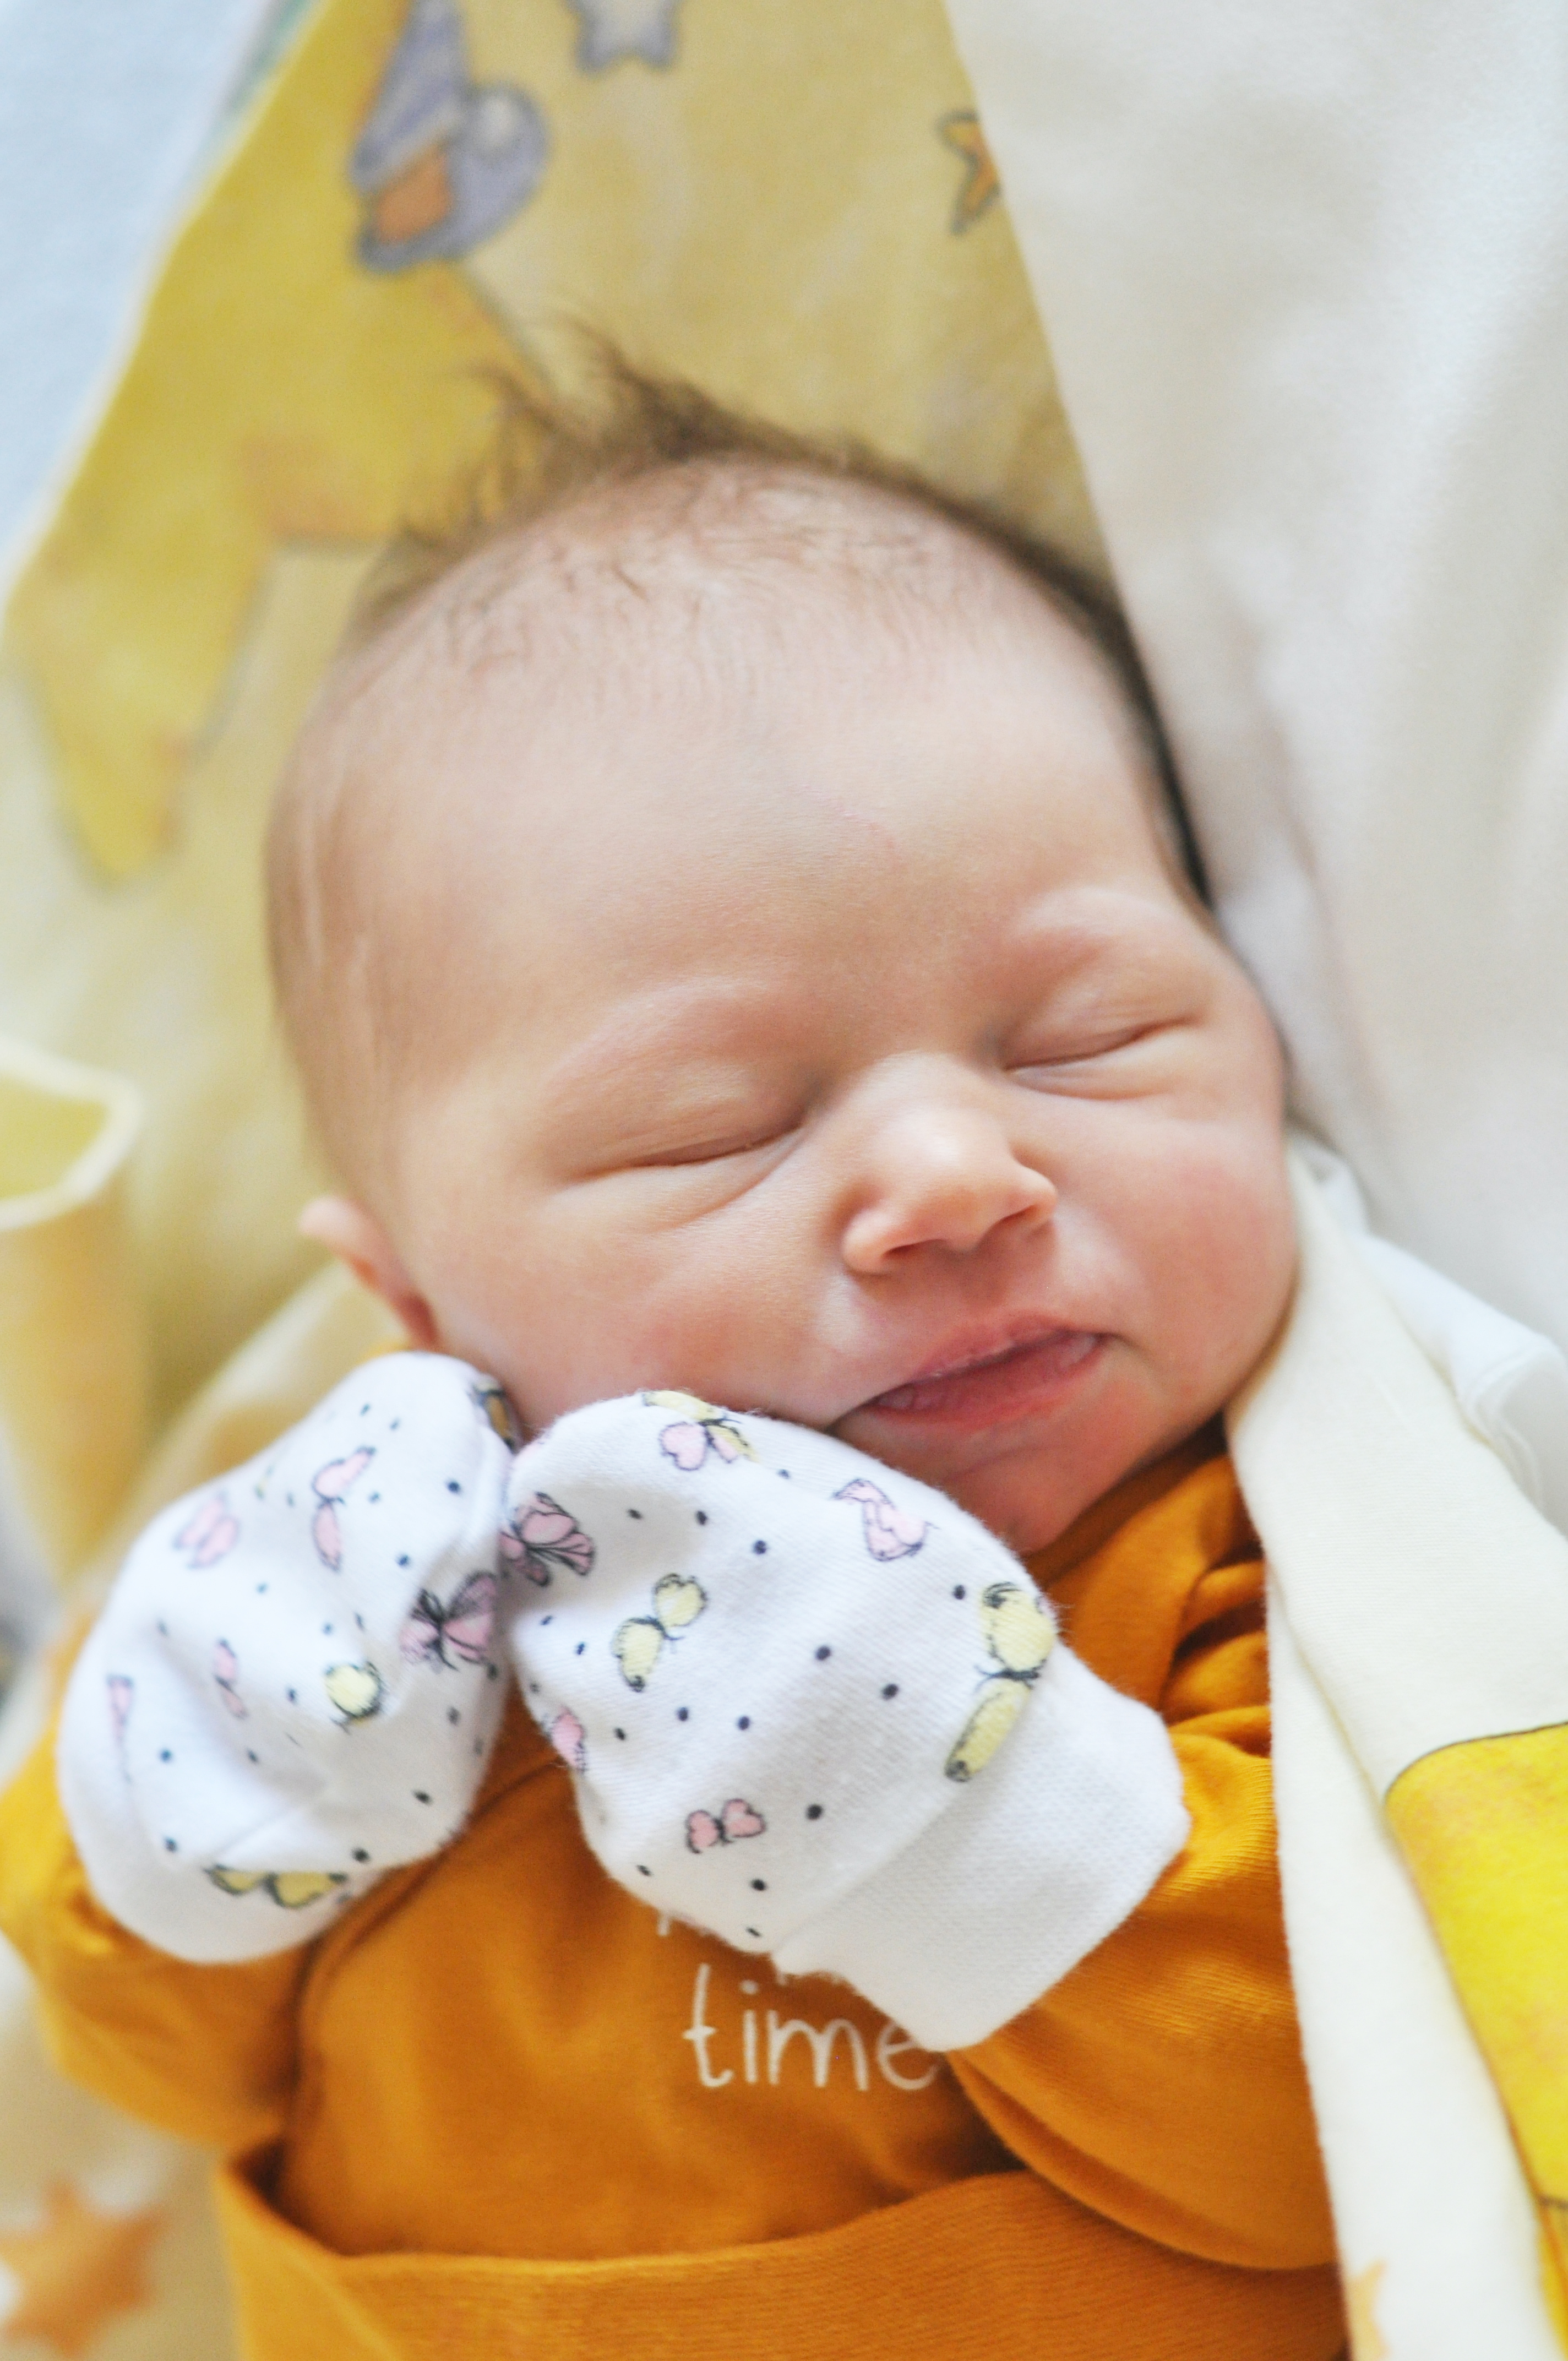 Sofija Olinichenko jest pierwszą córką Yulii i Yevhena. Narodziła się 28 lutego o 13.45. Przy wadze 3190 mierzyła 54 cm. Rodzina mieszka w Raciborzu.